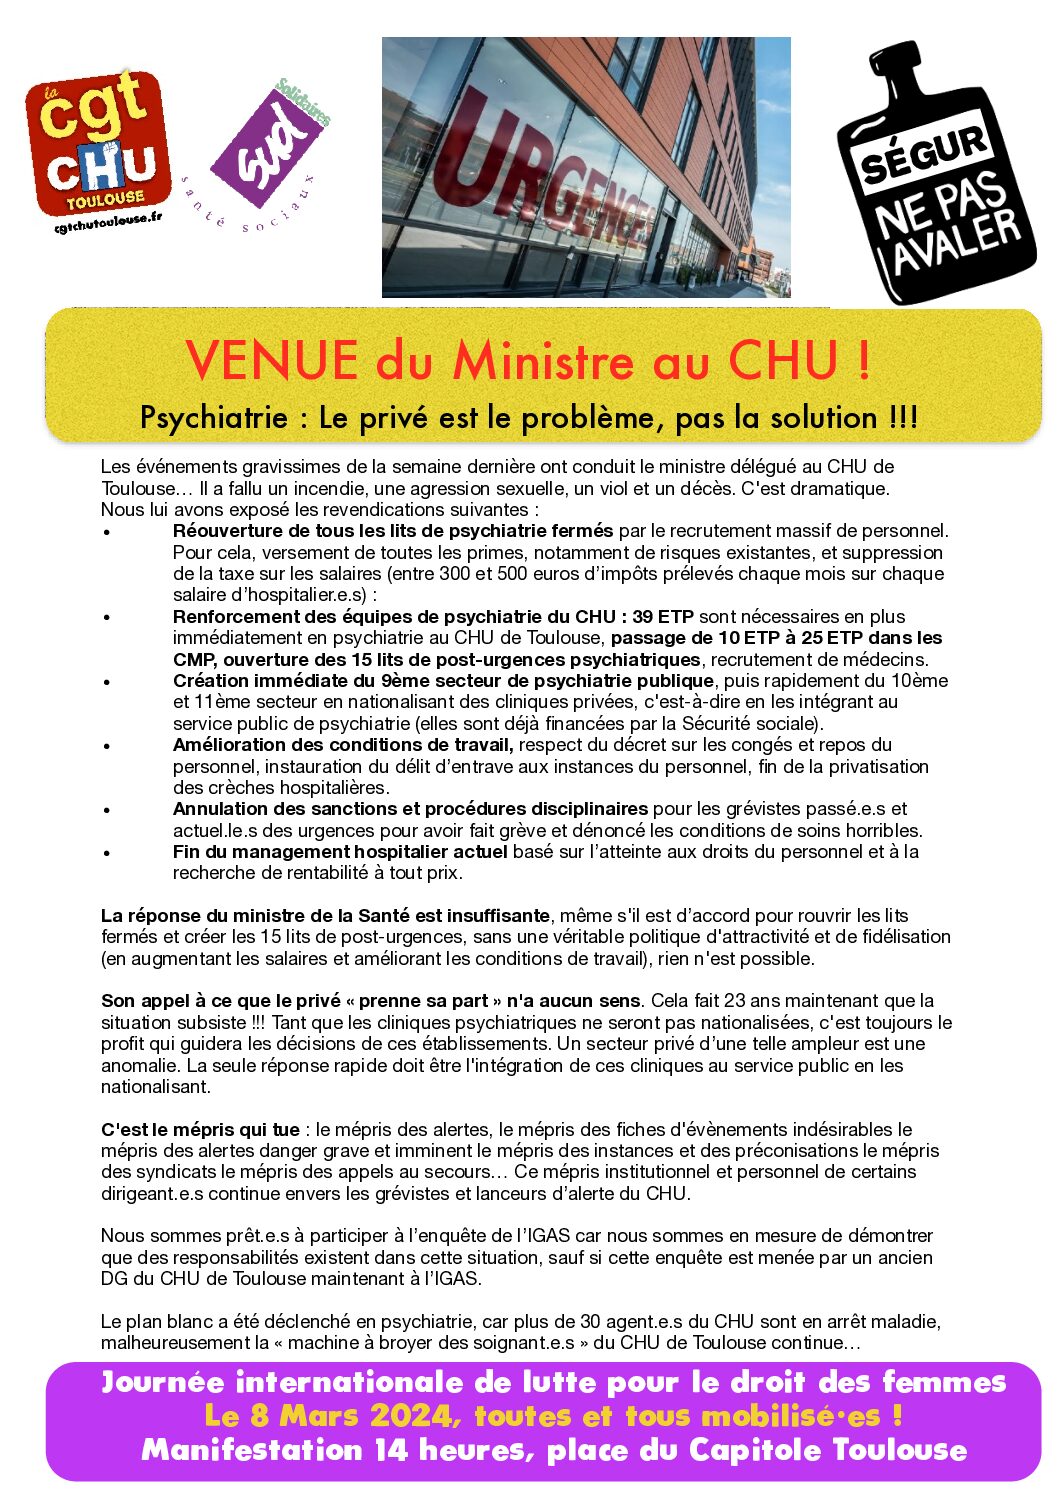 Sabotage psychiatrie publique : Venue du DG de l’ARS au CHU de Toulouse